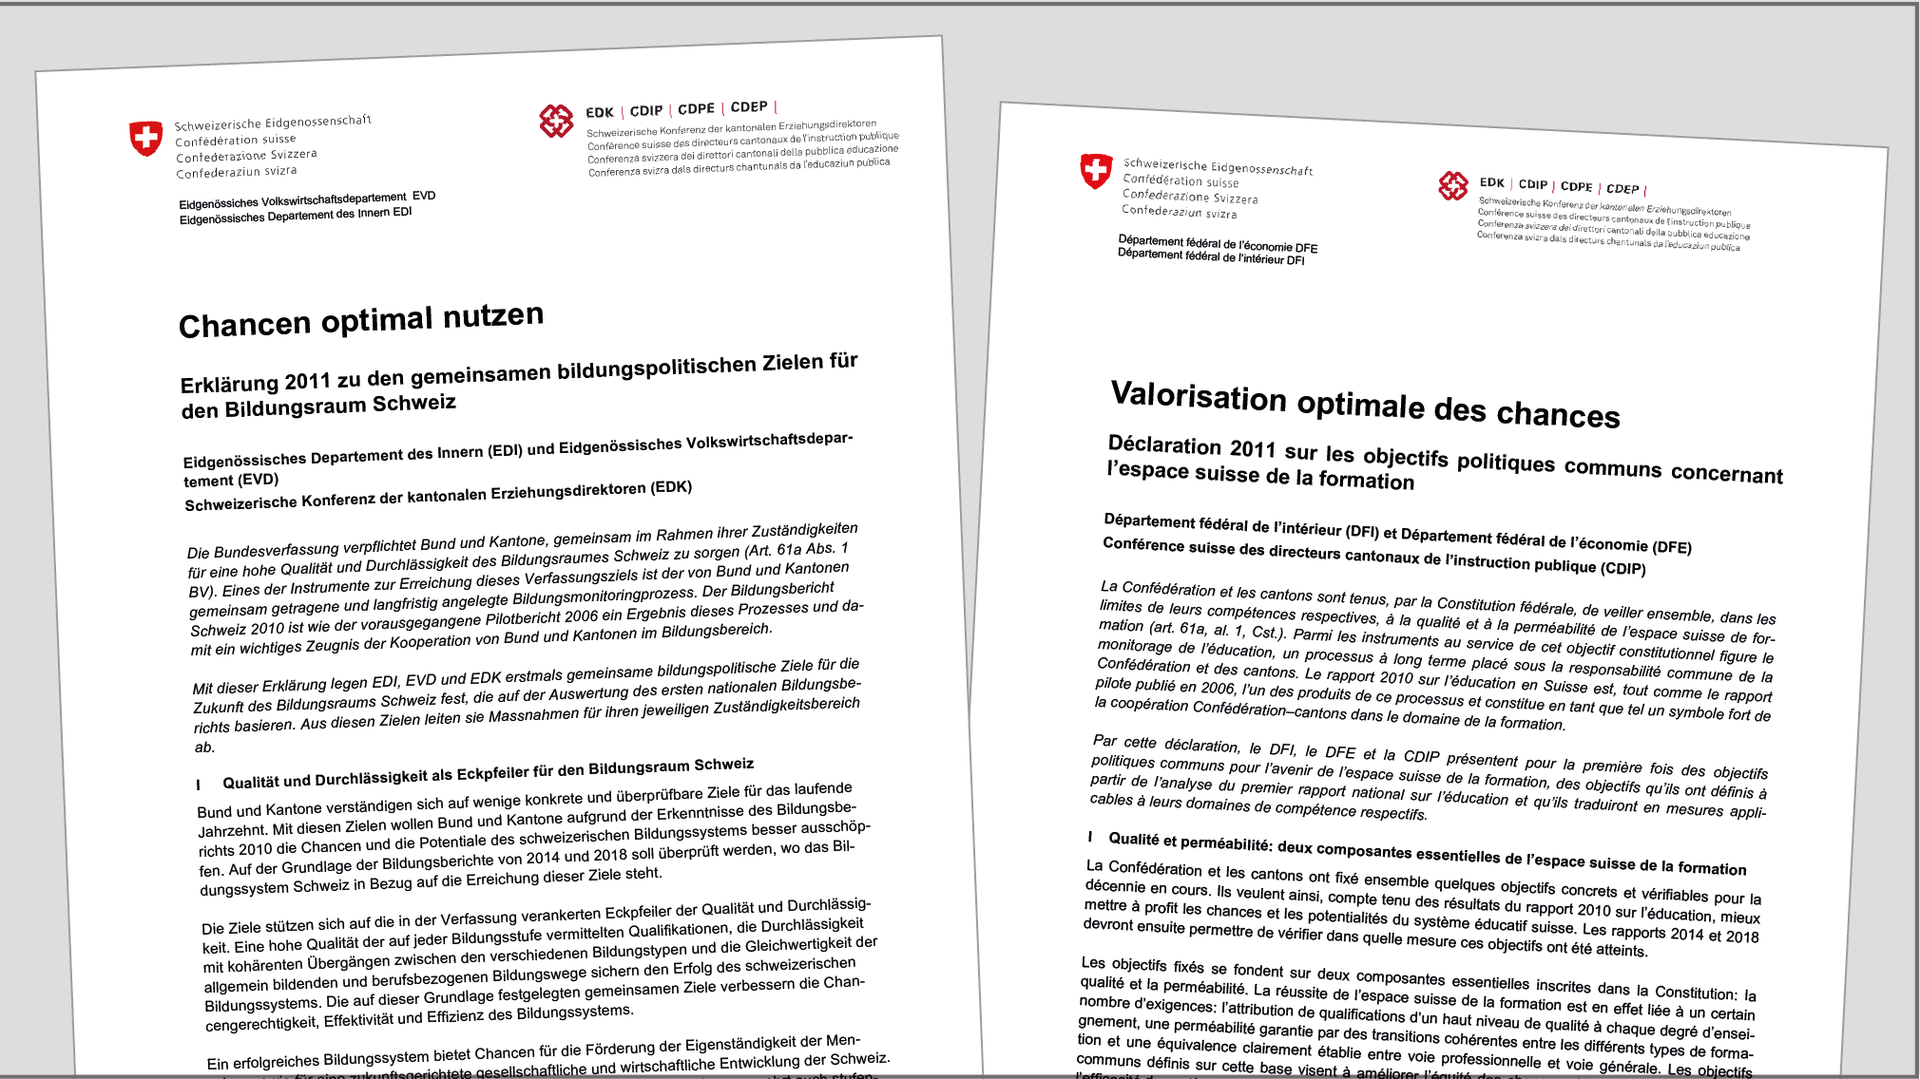 Titelblatt der  Erklärung zu den gemeinsamen bildungspolitischen Zielen für den Bildungsraum Schweiz; links auf Deutsch, rechts auf Französisch